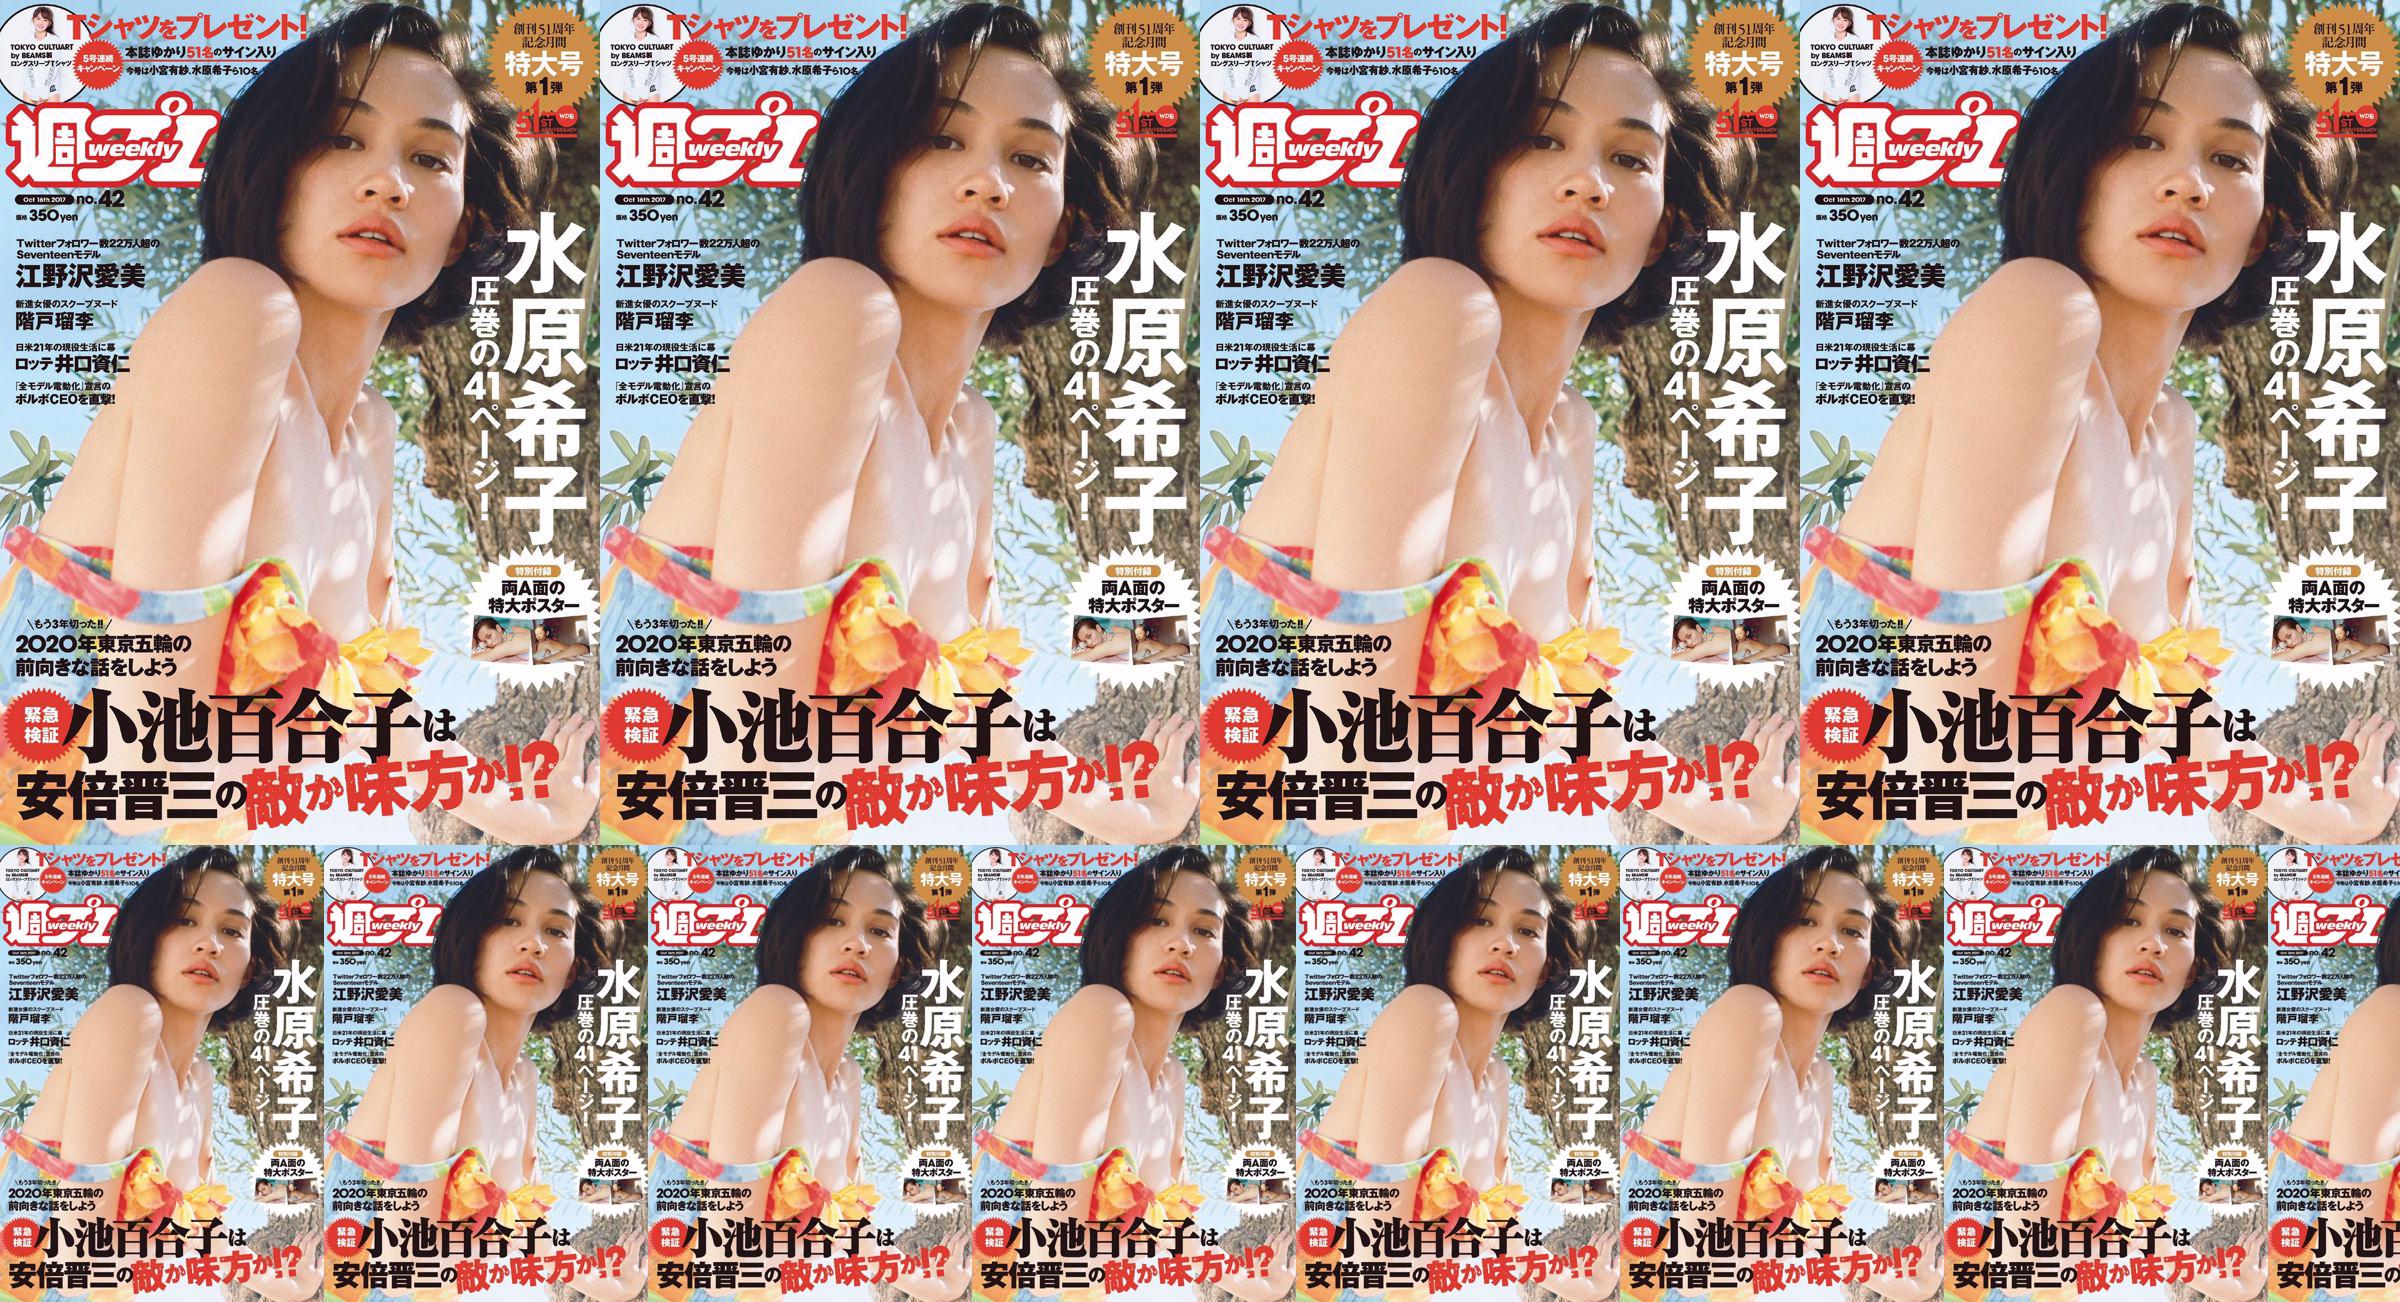 Kiko Mizuhara Manami Enosawa Serina Fukui Miu Nakamura Ruri Shinato [Weekly Playboy] 2017 No.42 Photo Magazine No.db95d0 หน้า 1